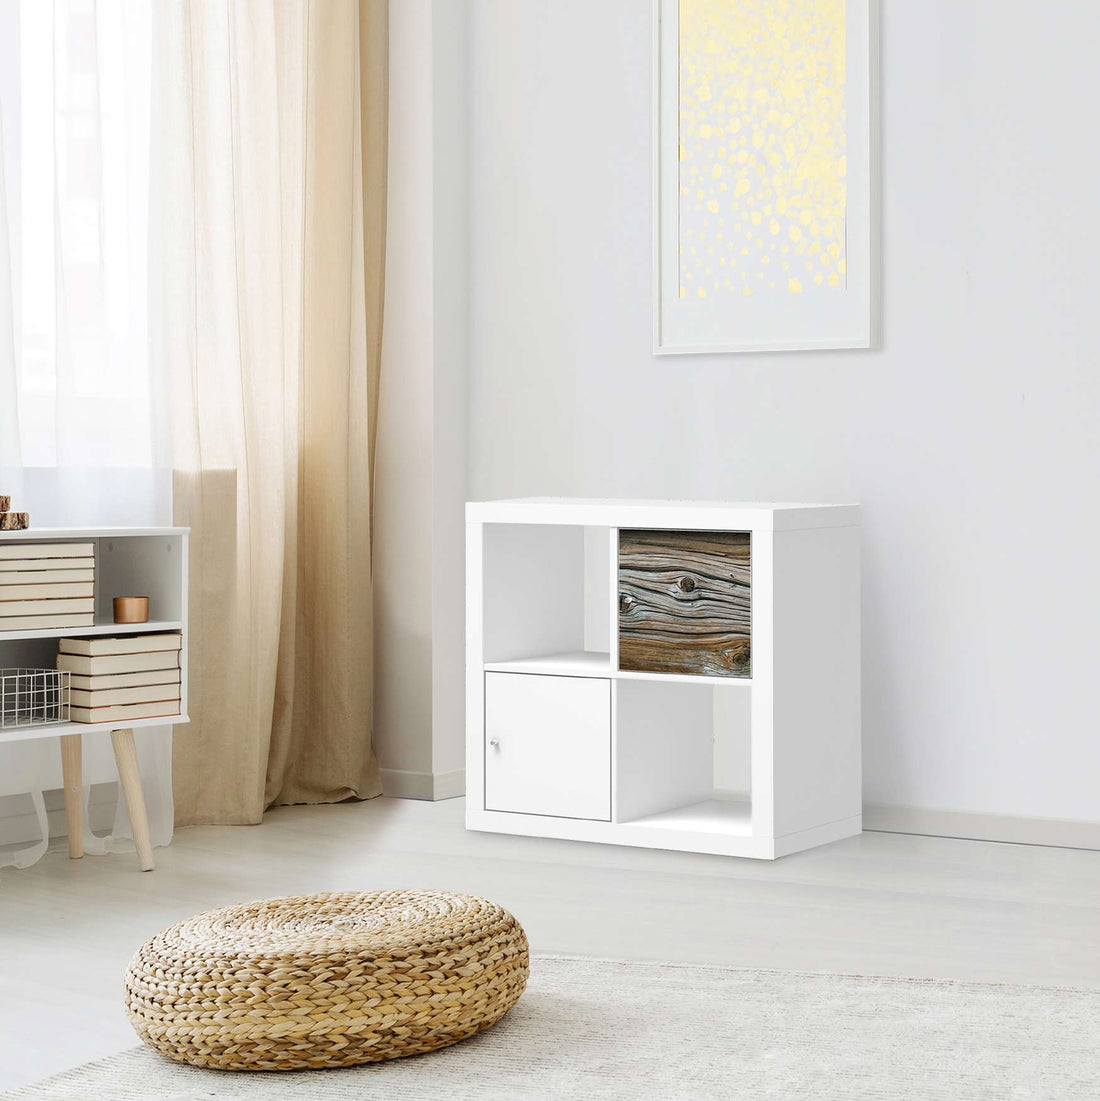 Selbstklebende Folie Hochbejahrt - IKEA Kallax Regal 1 Türe - Wohnzimmer